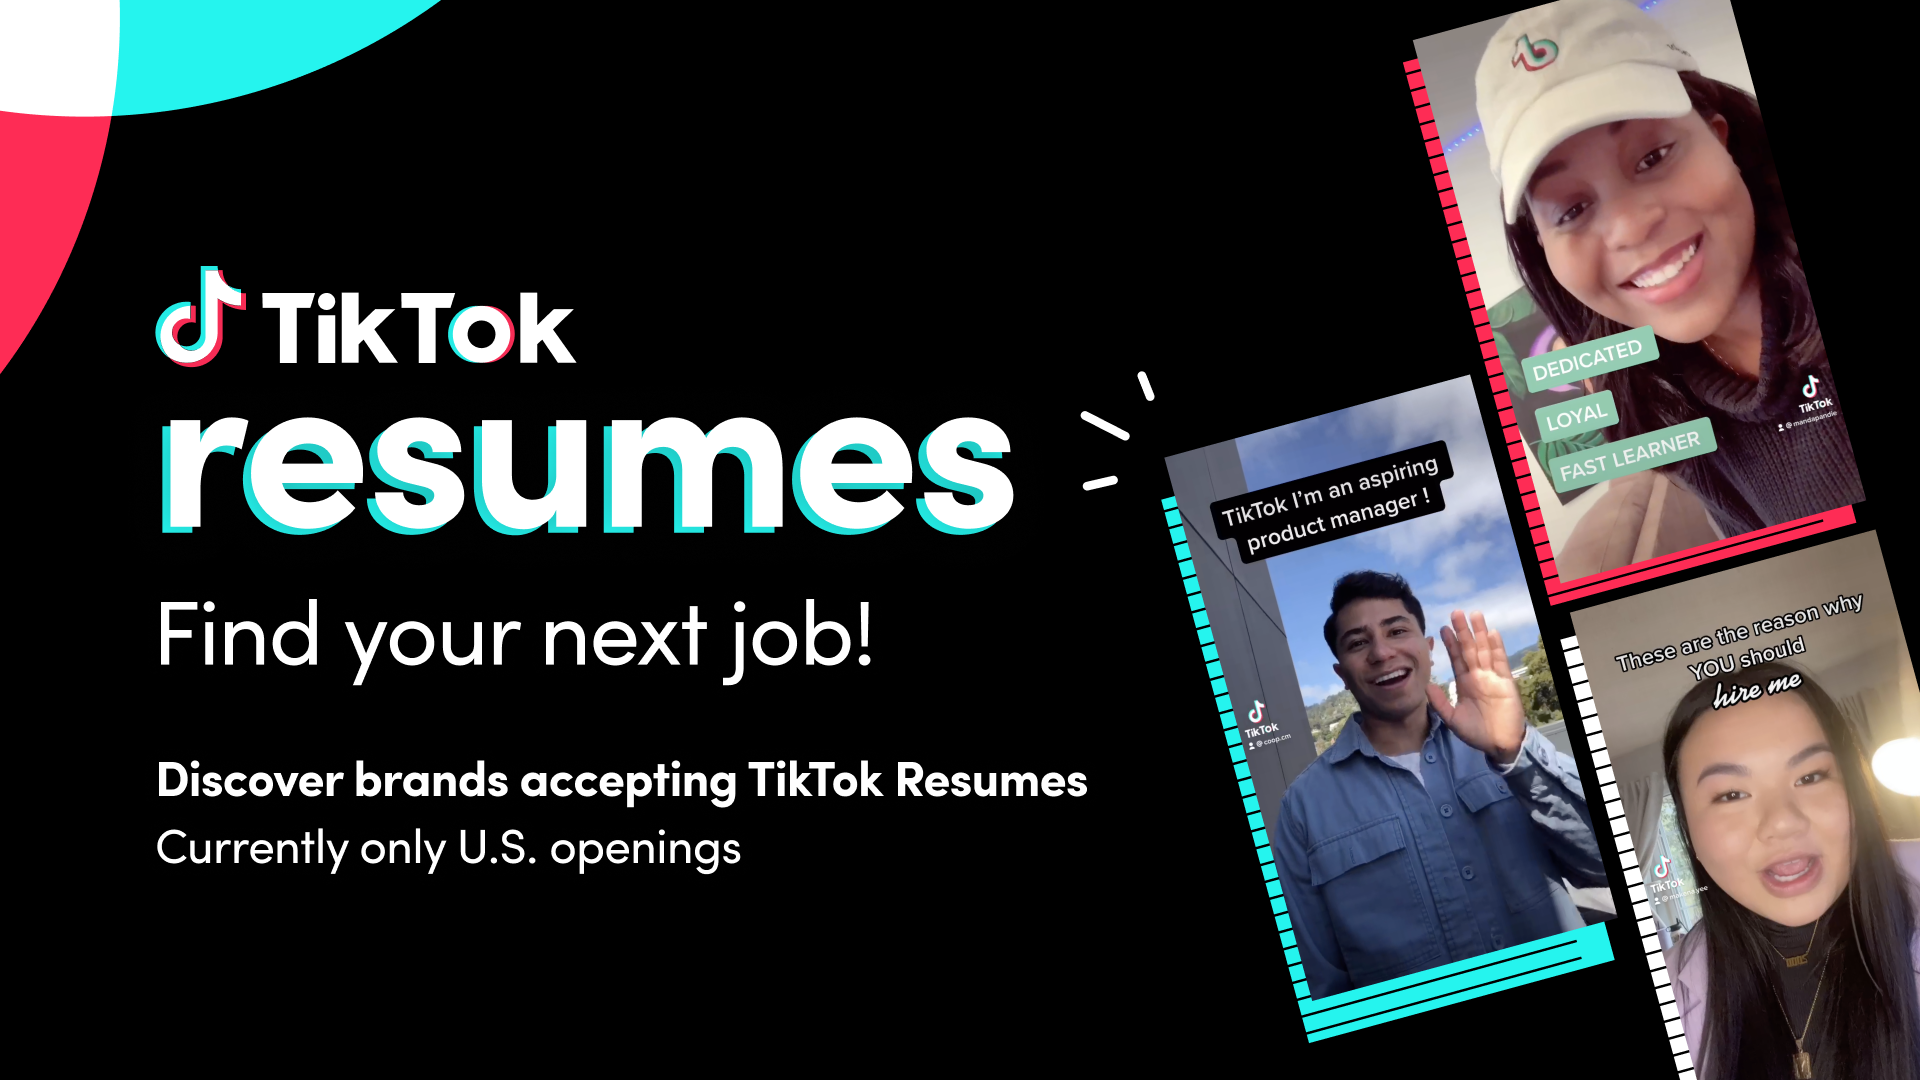 Doanh nghiệp tuyển dụng qua TikTok, bạn trẻ làm video giới thiệu bản thân - Ảnh 4.